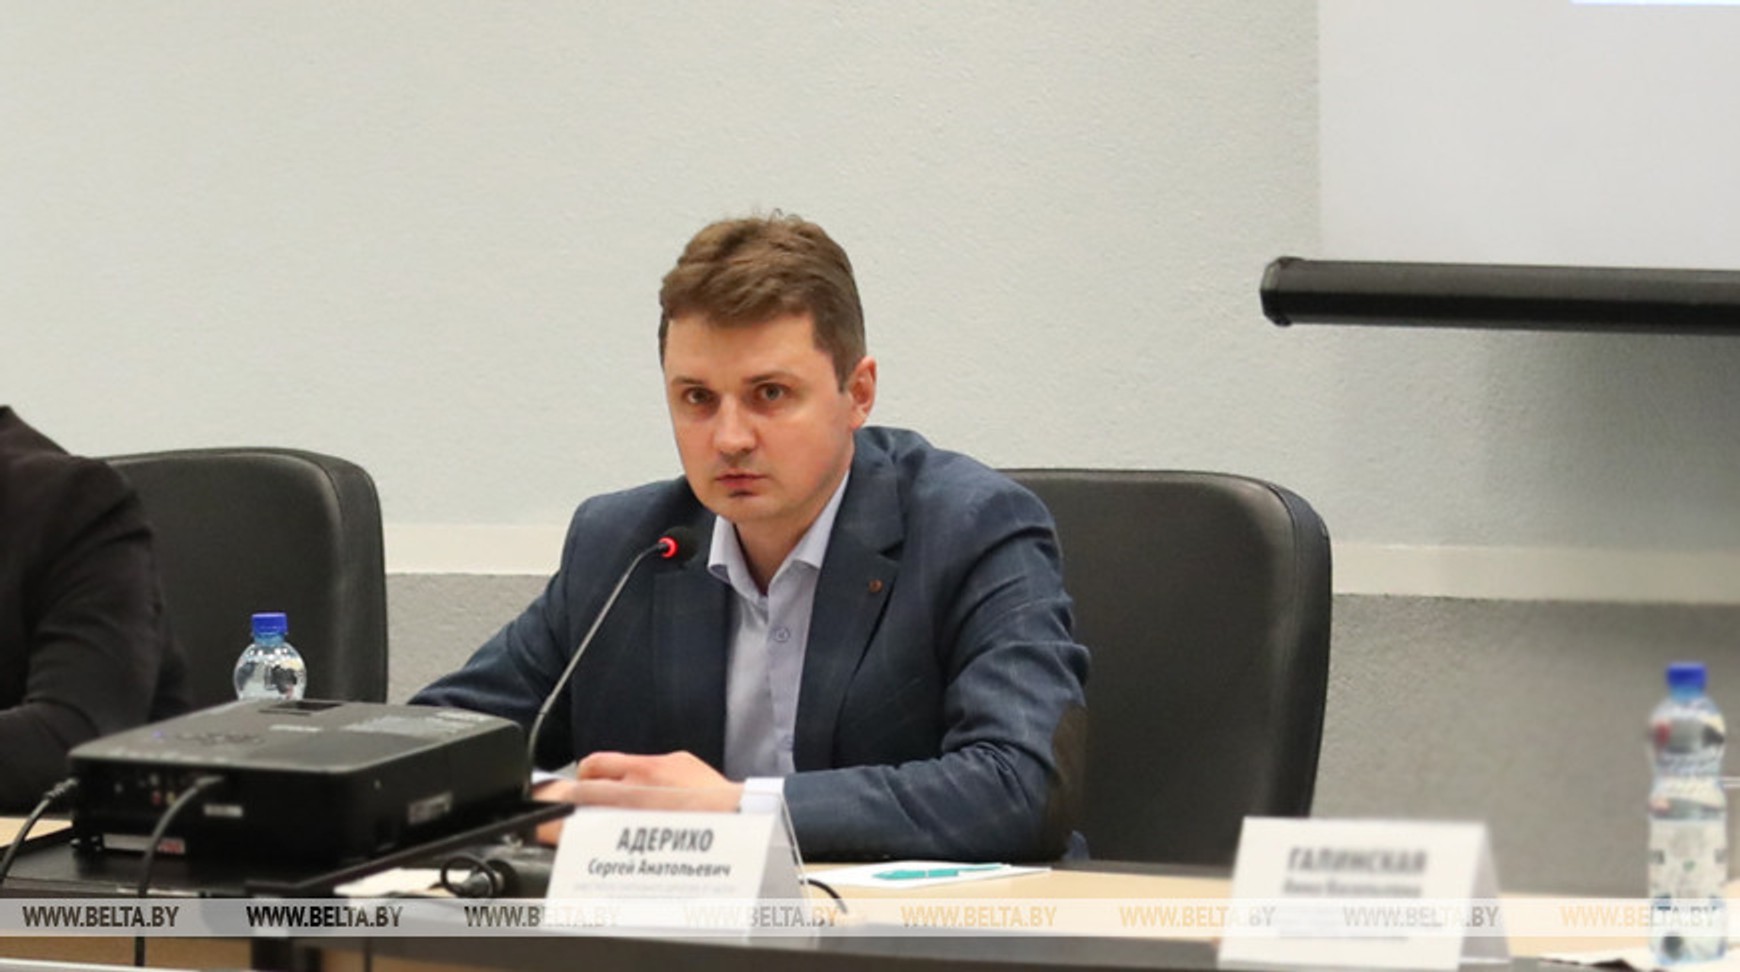 Заместитель директора белорусского госагентства БЕЛТА приговорен к 5 годам колонии за передачу информации оппозиции 